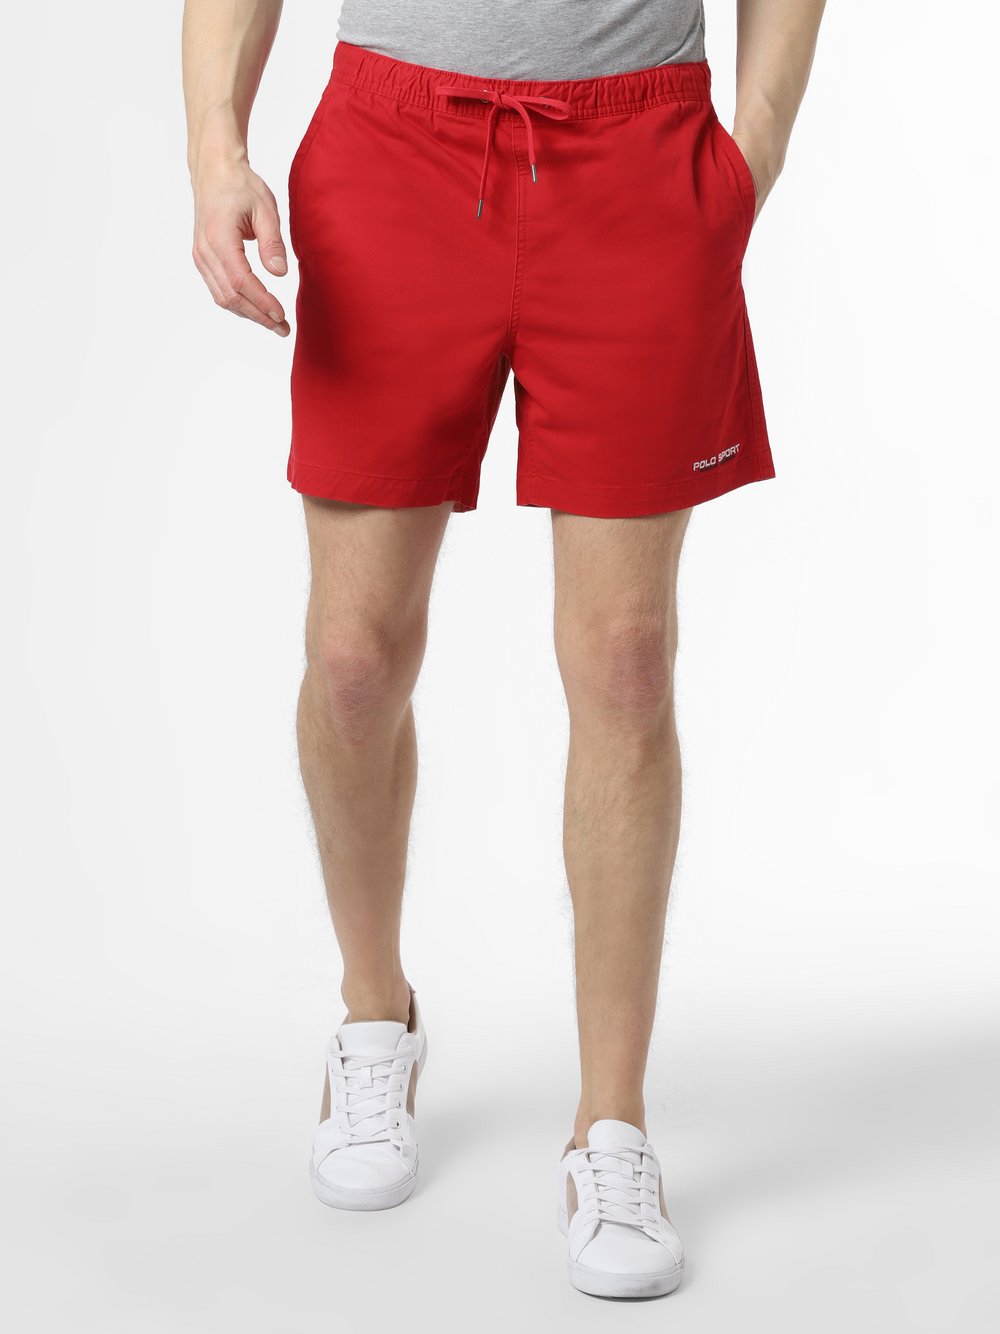 Polo Ralph Lauren - Spodenki męskie – Classic Fit, czerwony